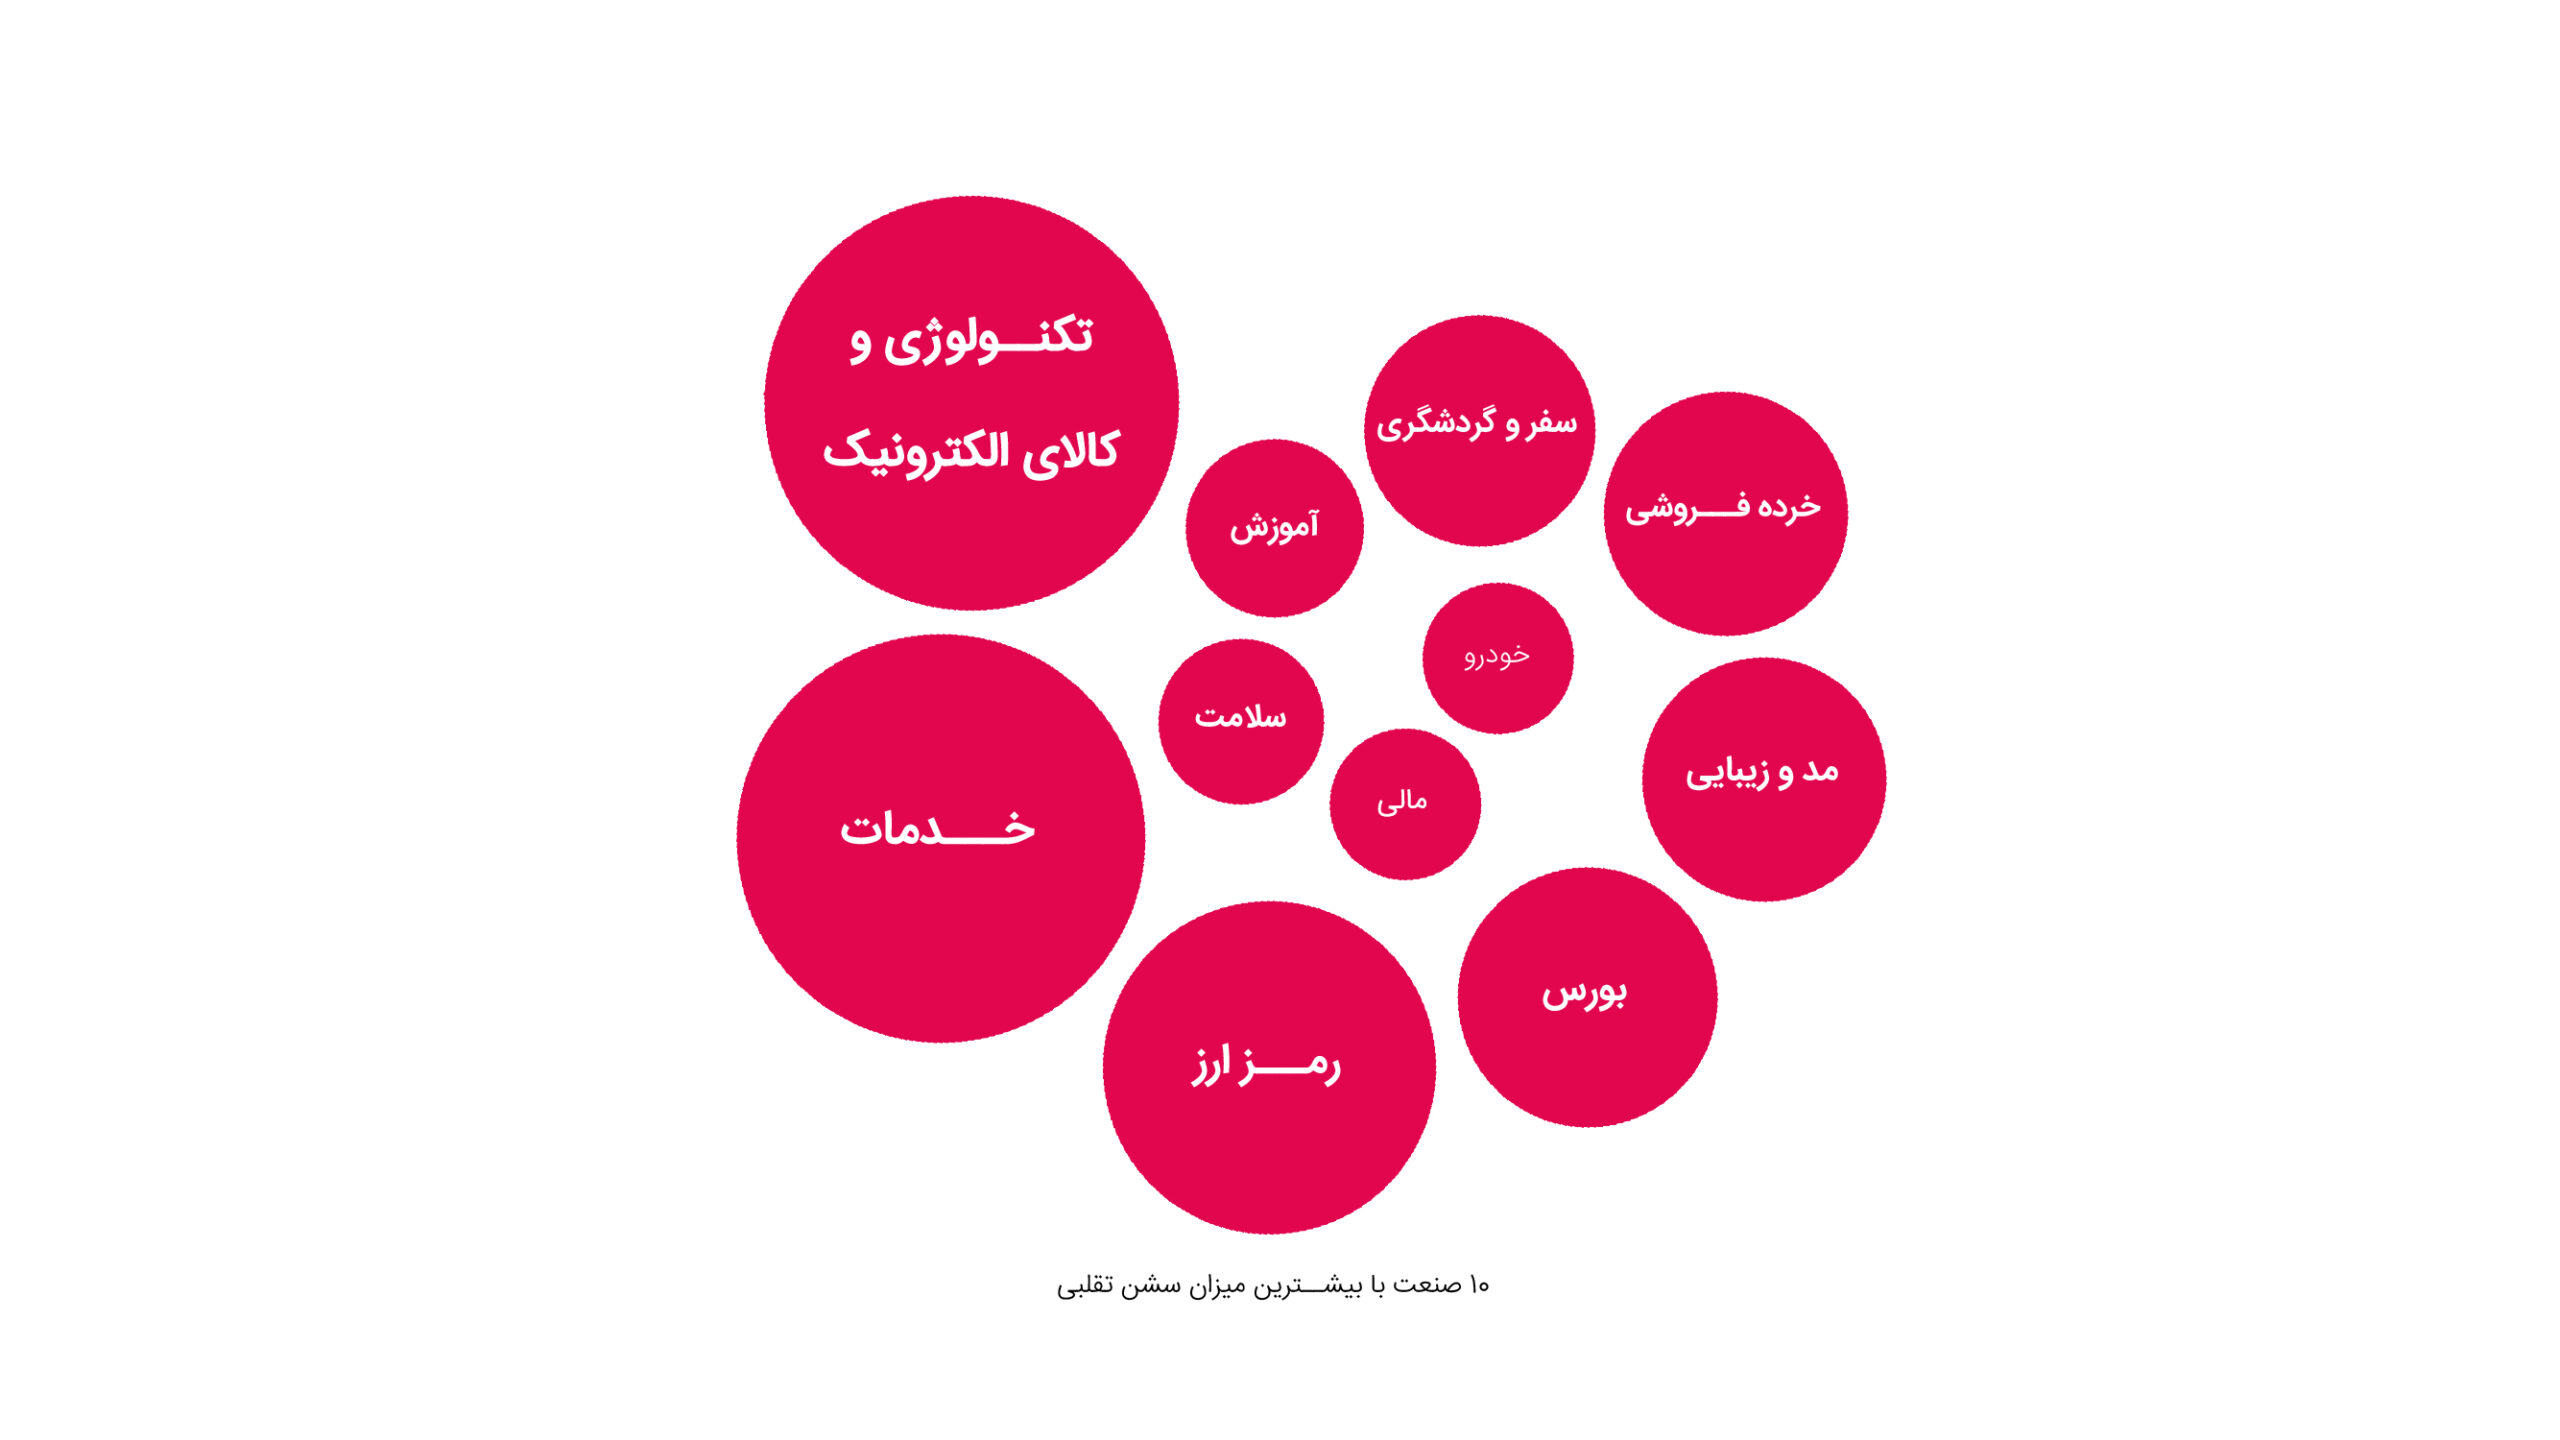 ۲۵ درصد سشن‌های تبلیغات آنلاین در ایران تقلبی‌ست؛ گزارش تقلب در تبلیغات آنلاین از دژینو 7